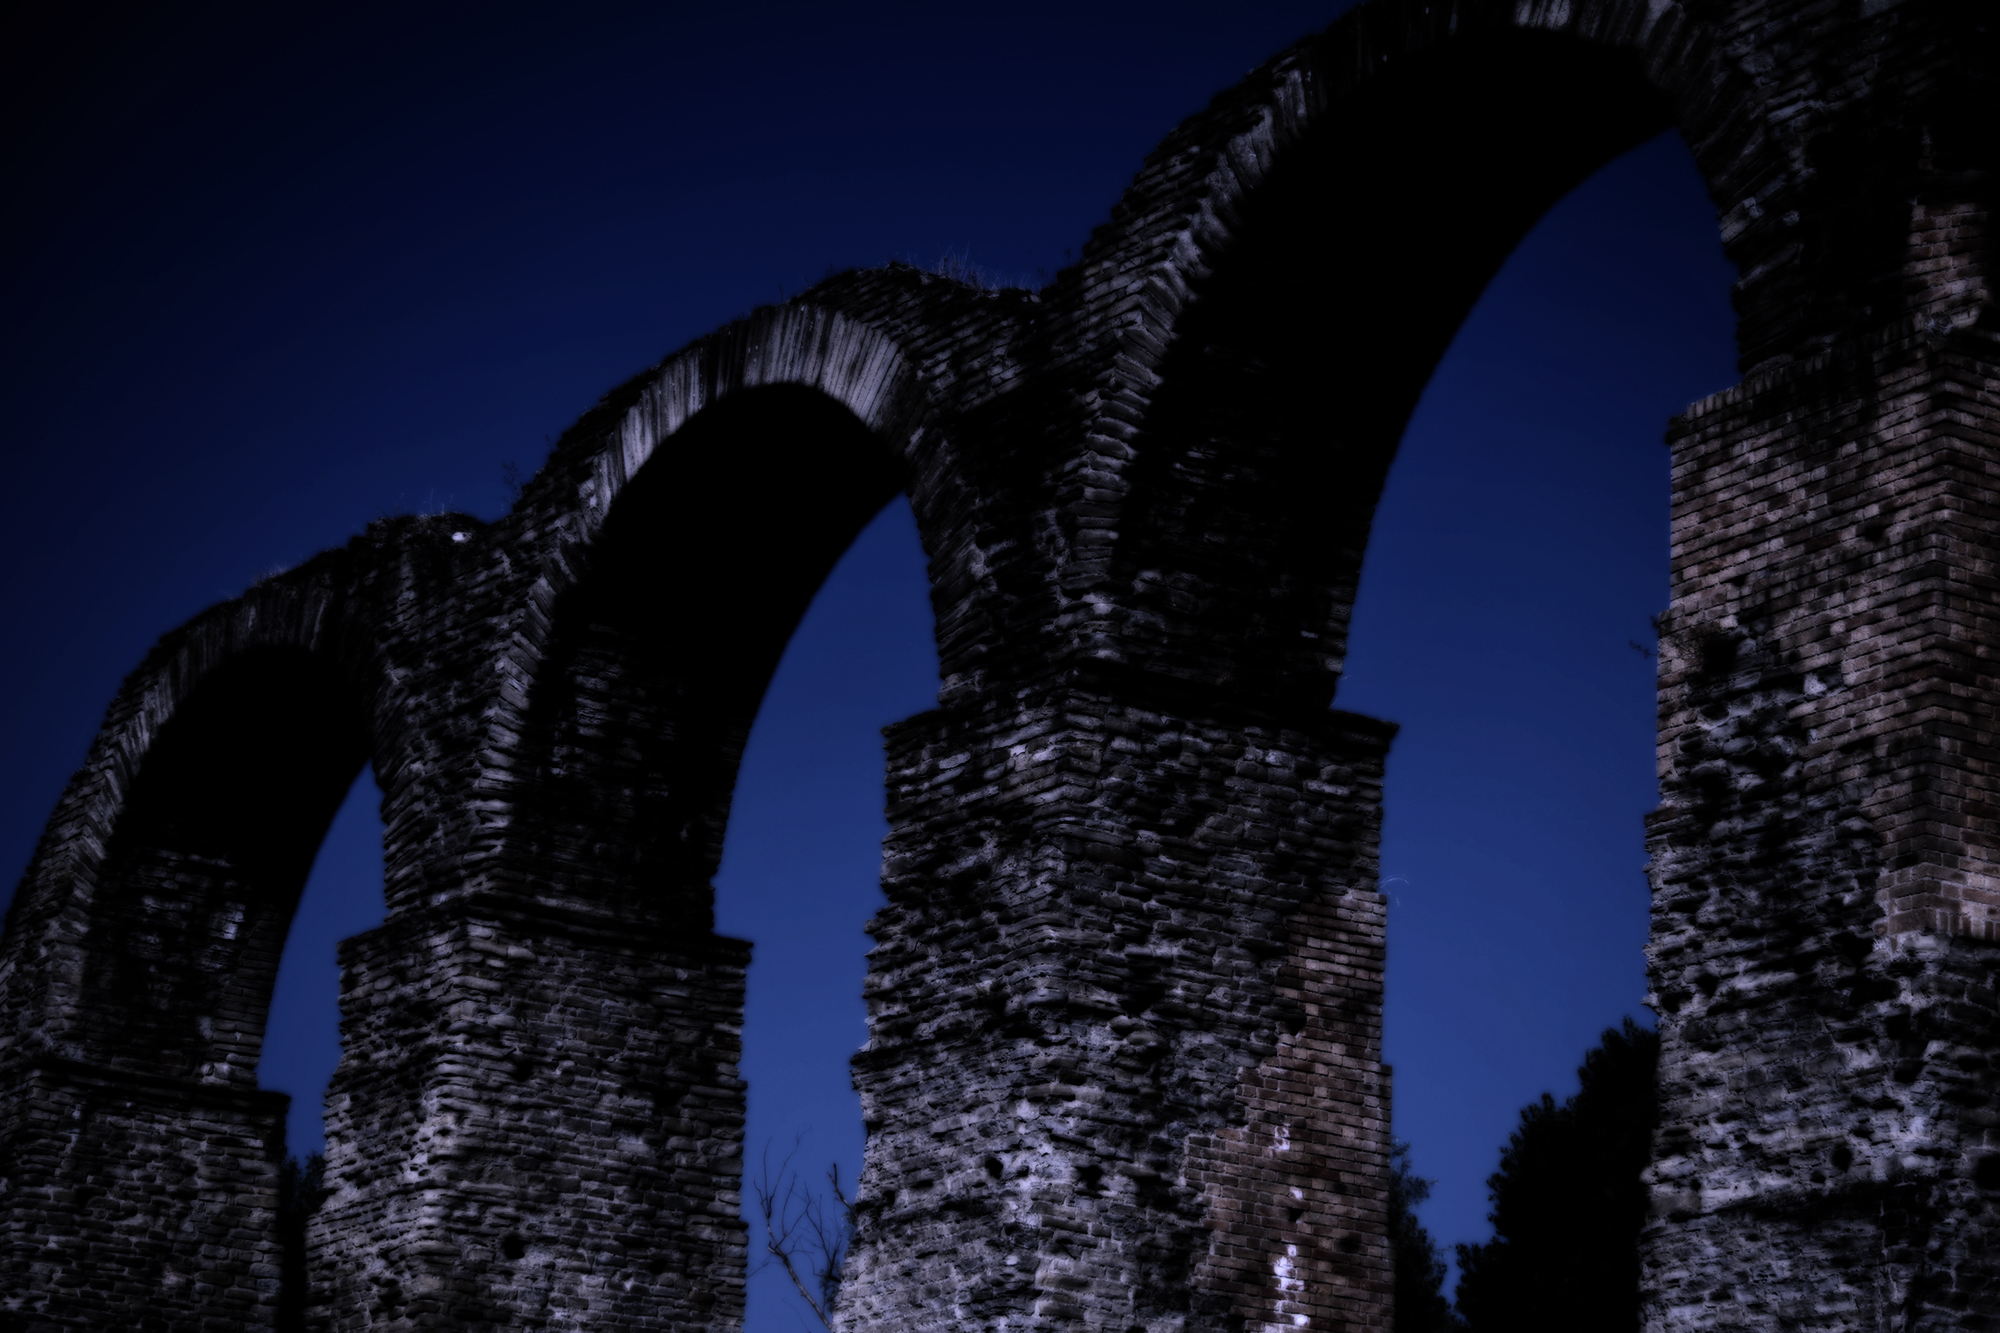 Roman arches blue hour...